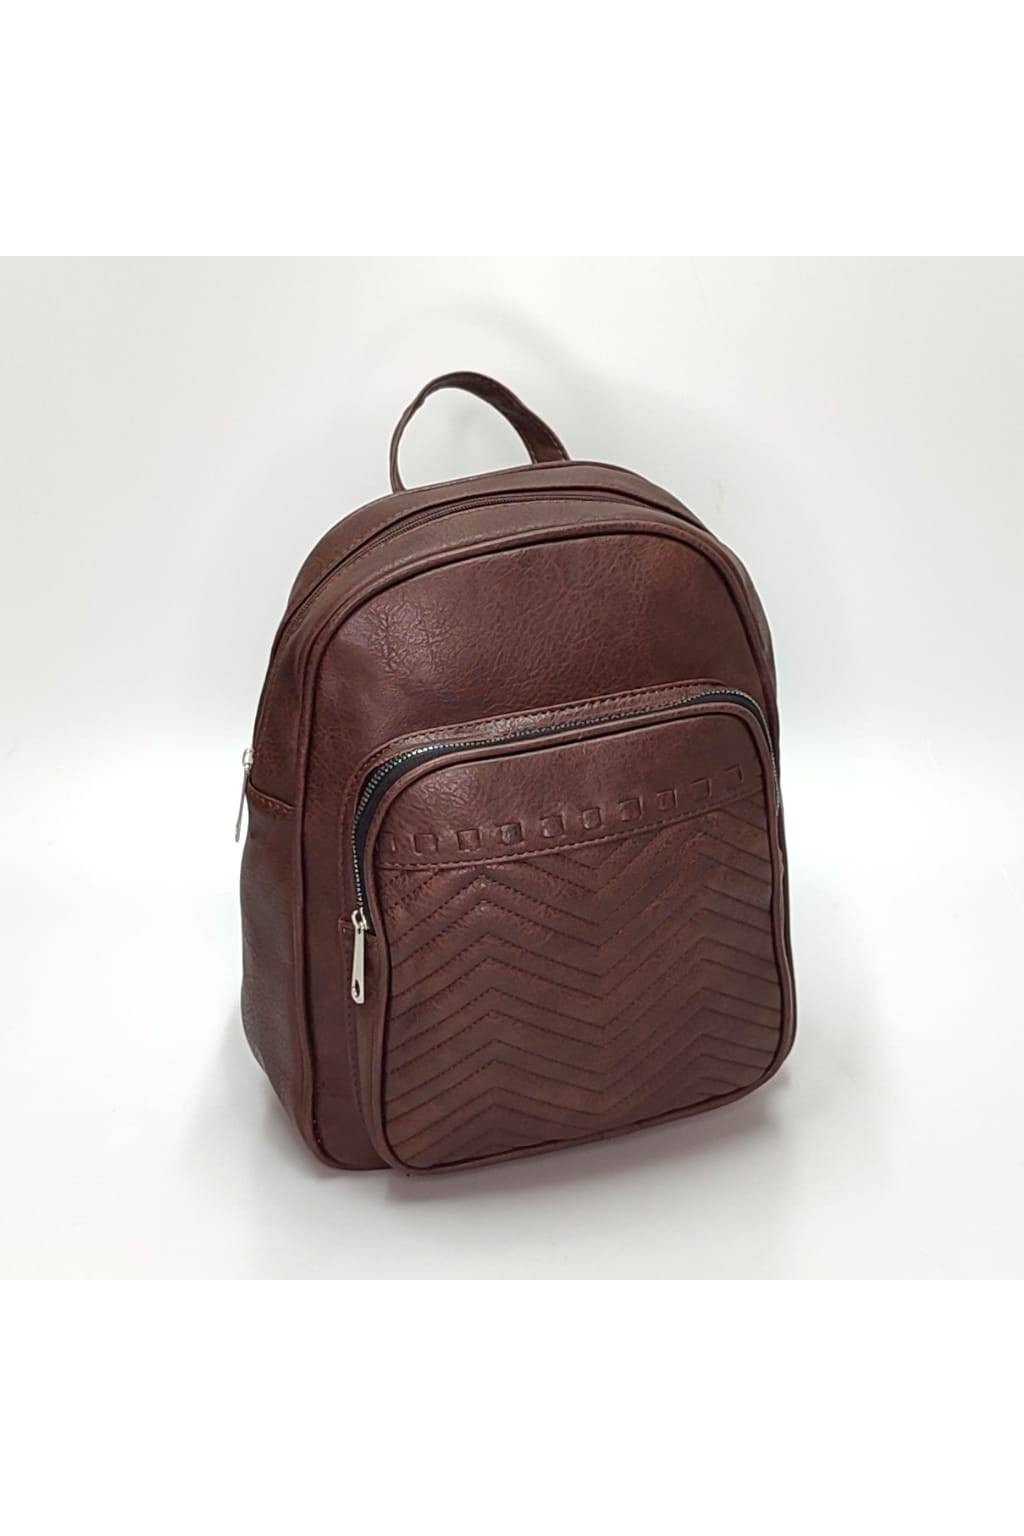 Dámsky ruksak DL0113 čokoládový www.kabelky vypredaj (2)